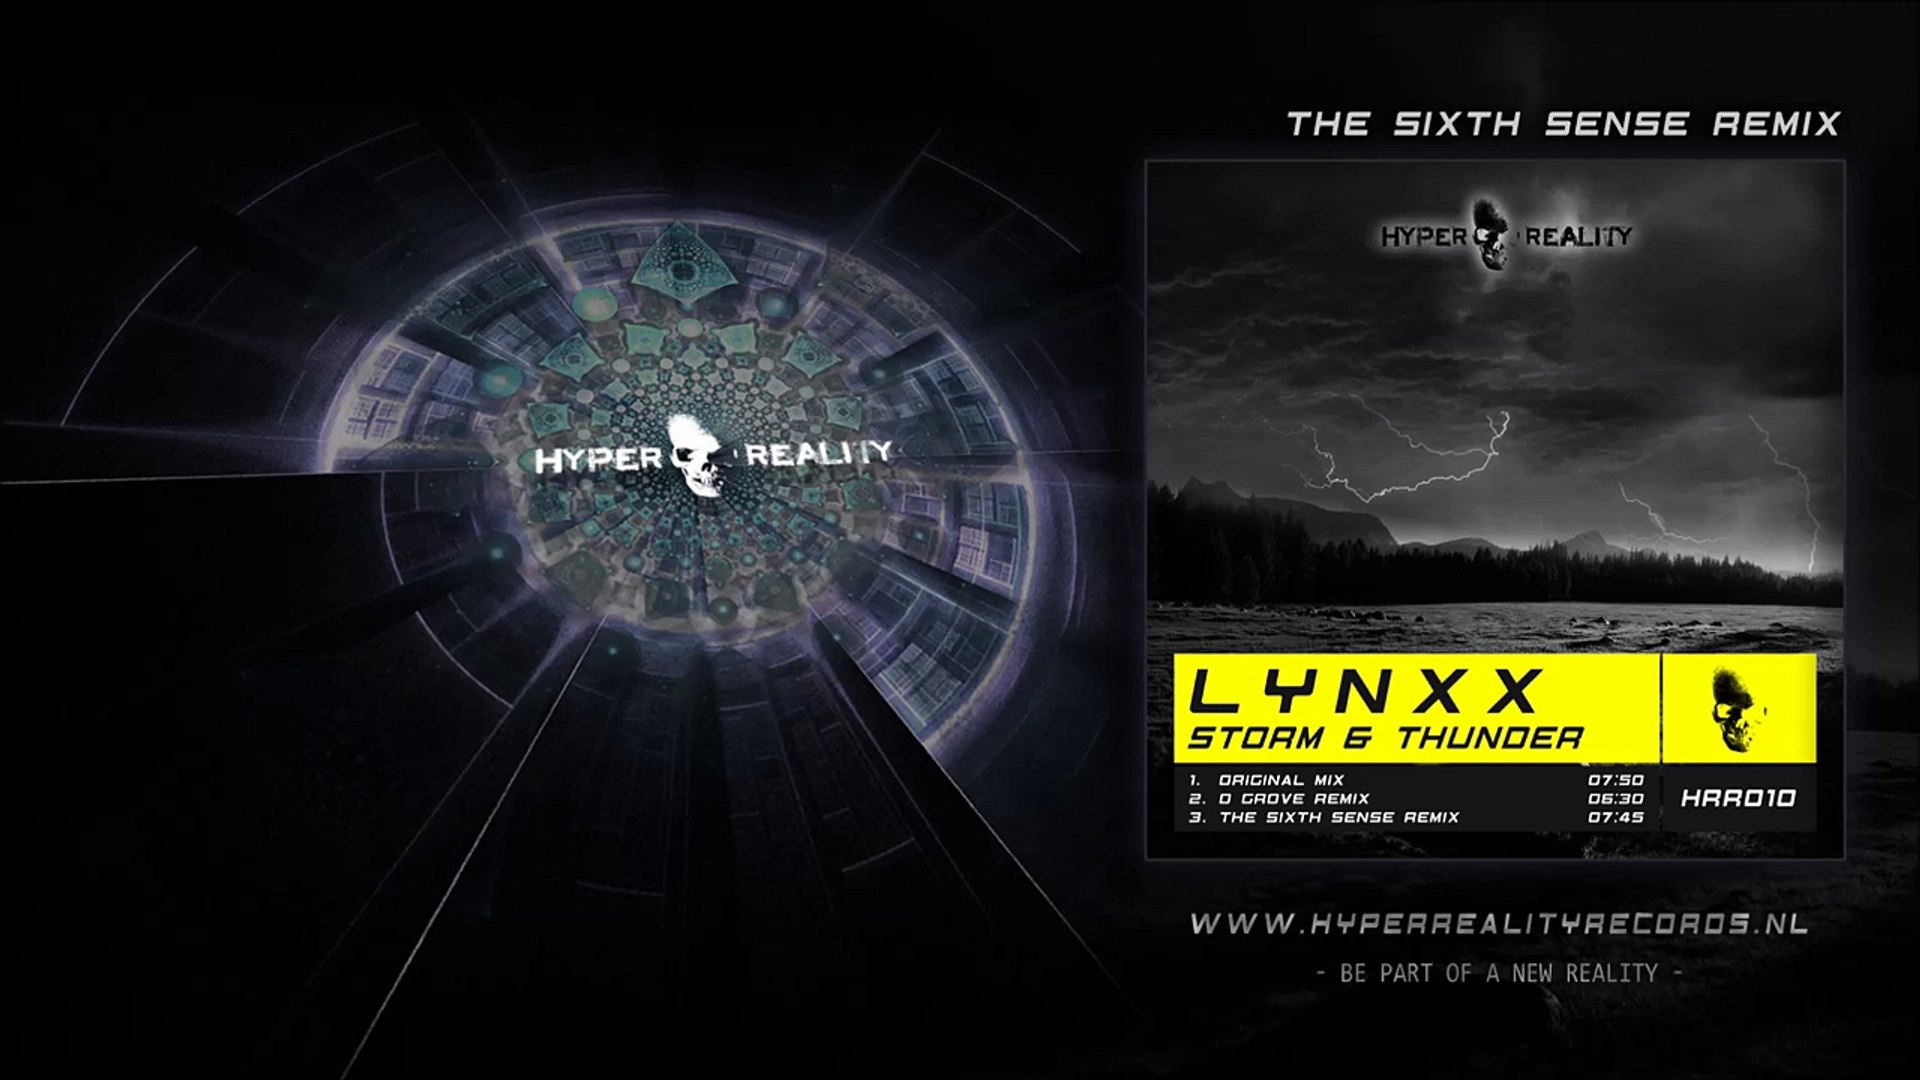 LYNXX - Storm & Thunder (The Sixth Sense Remix)